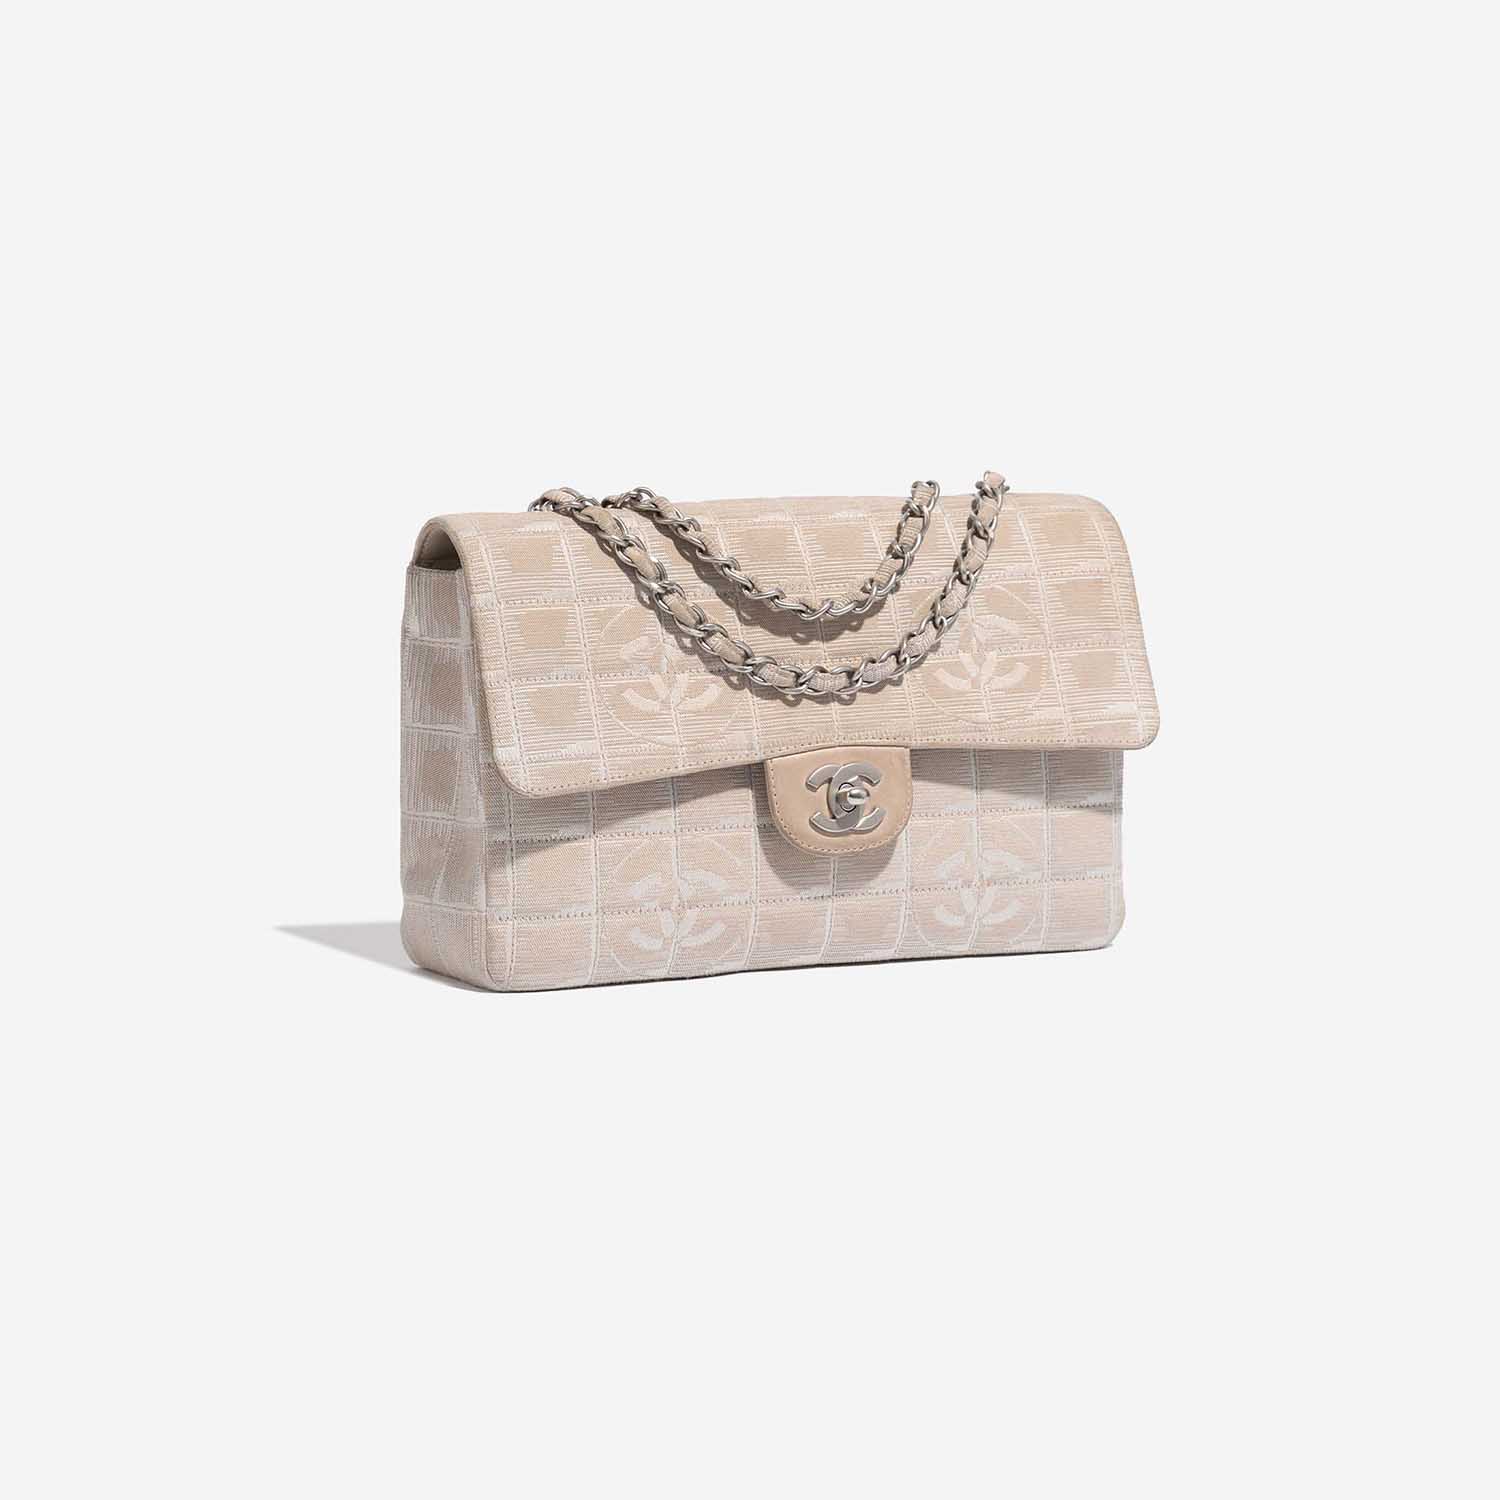 Chanel Timeless Medium Beige Side Front | Verkaufen Sie Ihre Designer-Tasche auf Saclab.com